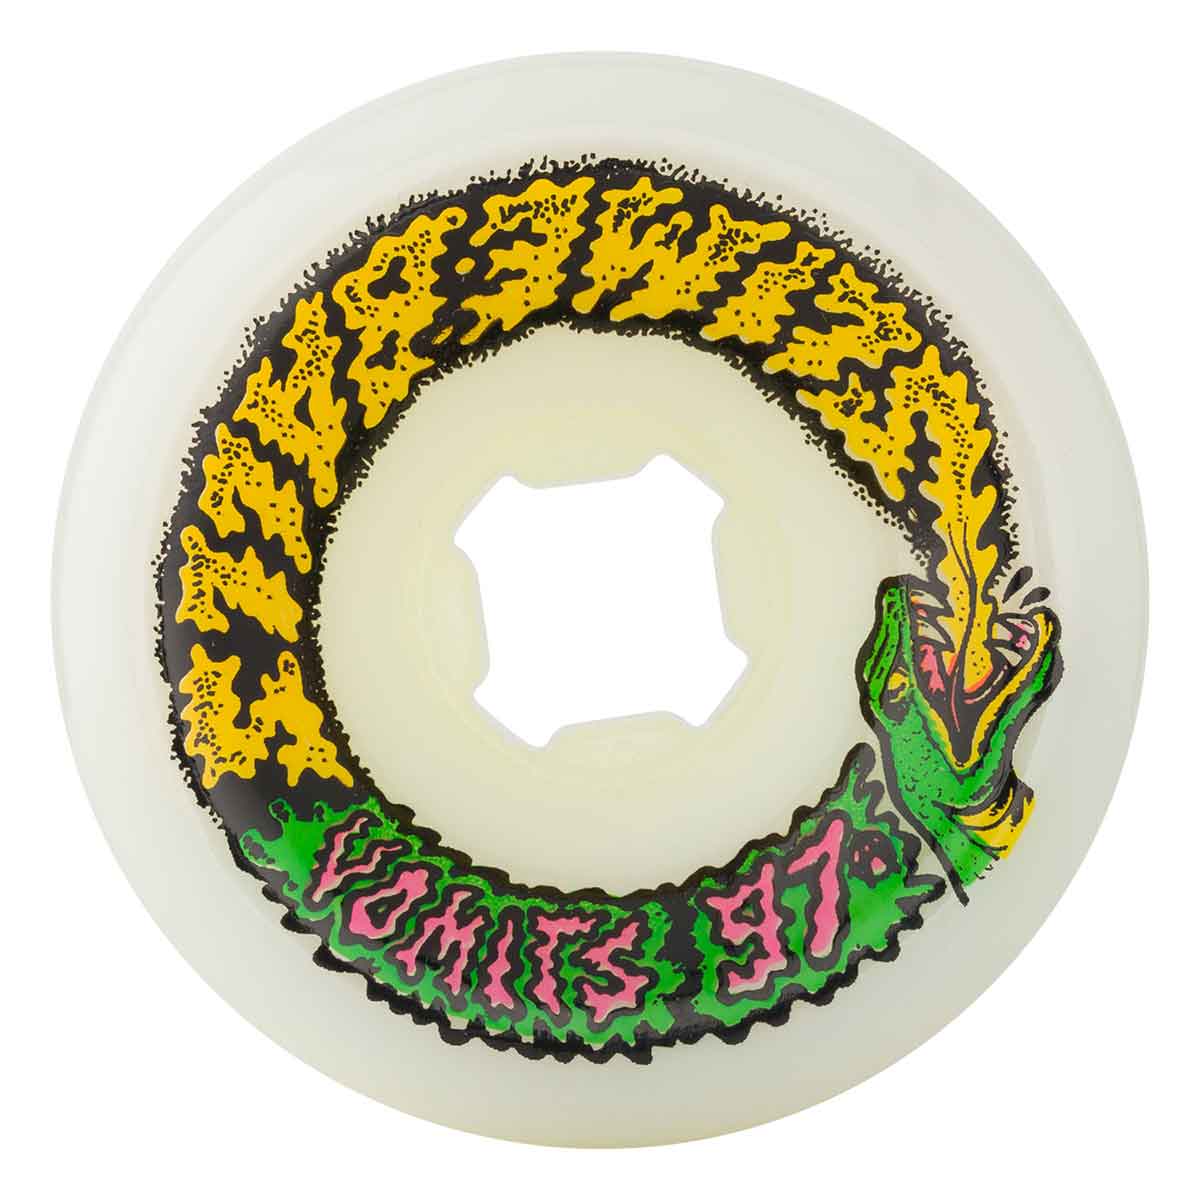 60mm 97a Slime Balls Snake Vomits Wheels - White